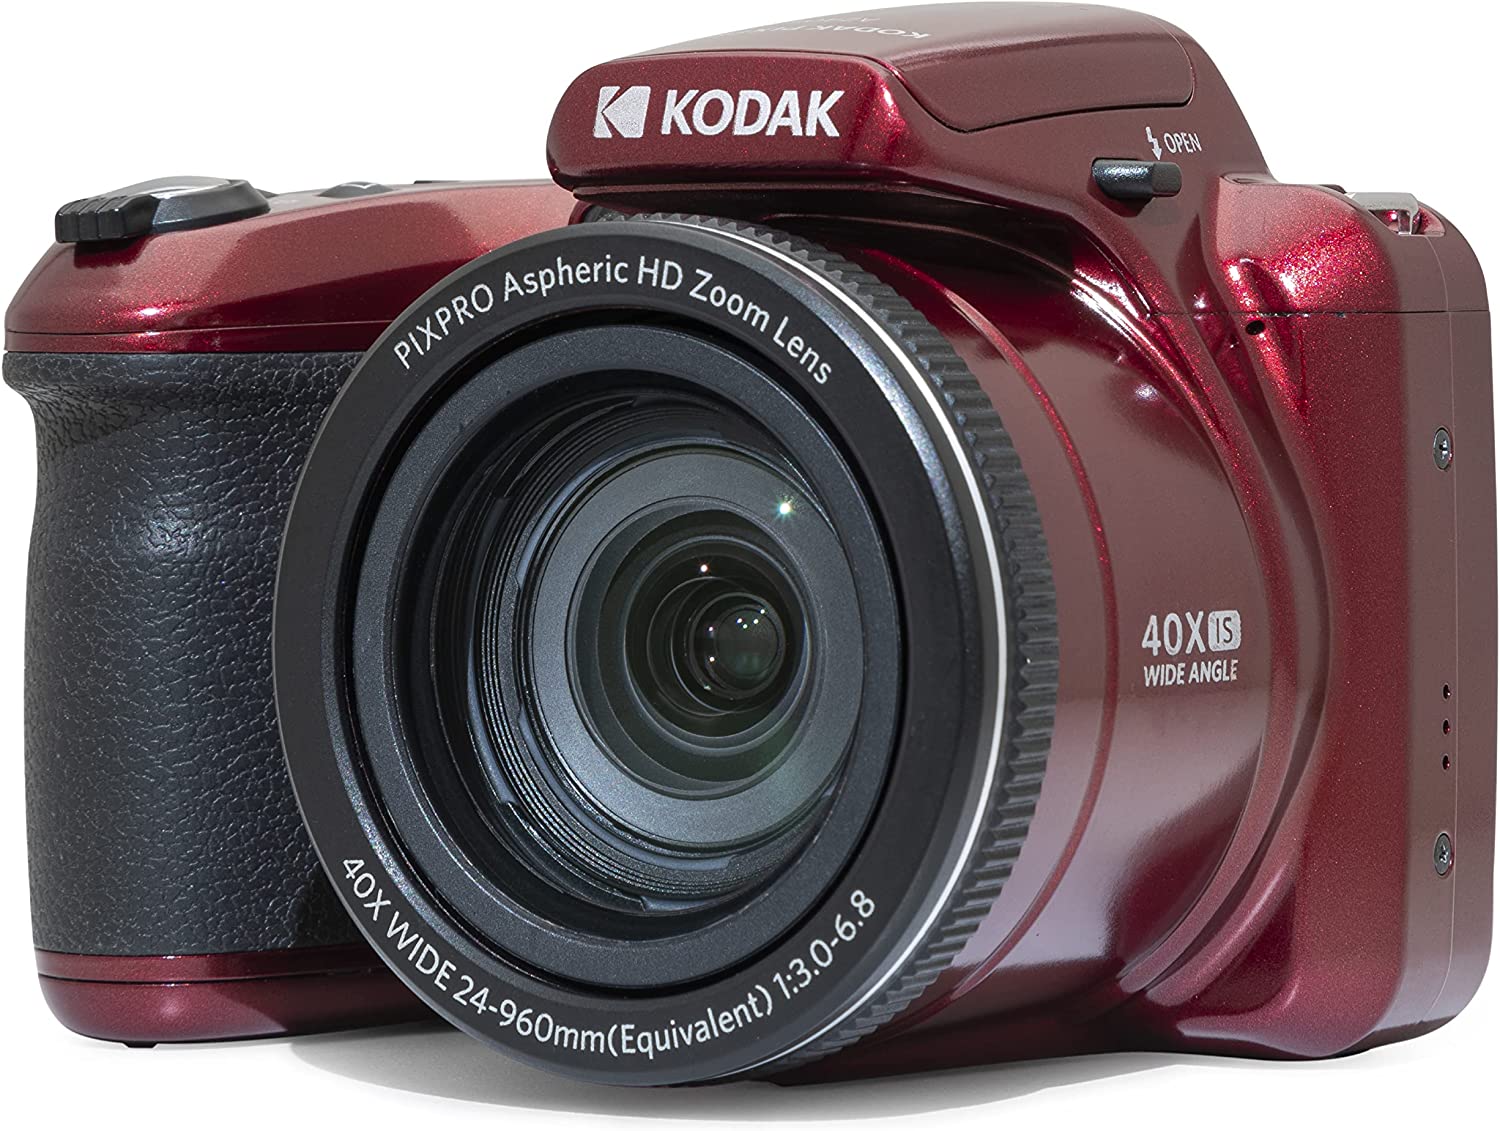 Product Image of KODAK PIXPRO AZ405 DIGITAL BRIDGE CAMERA (RED)